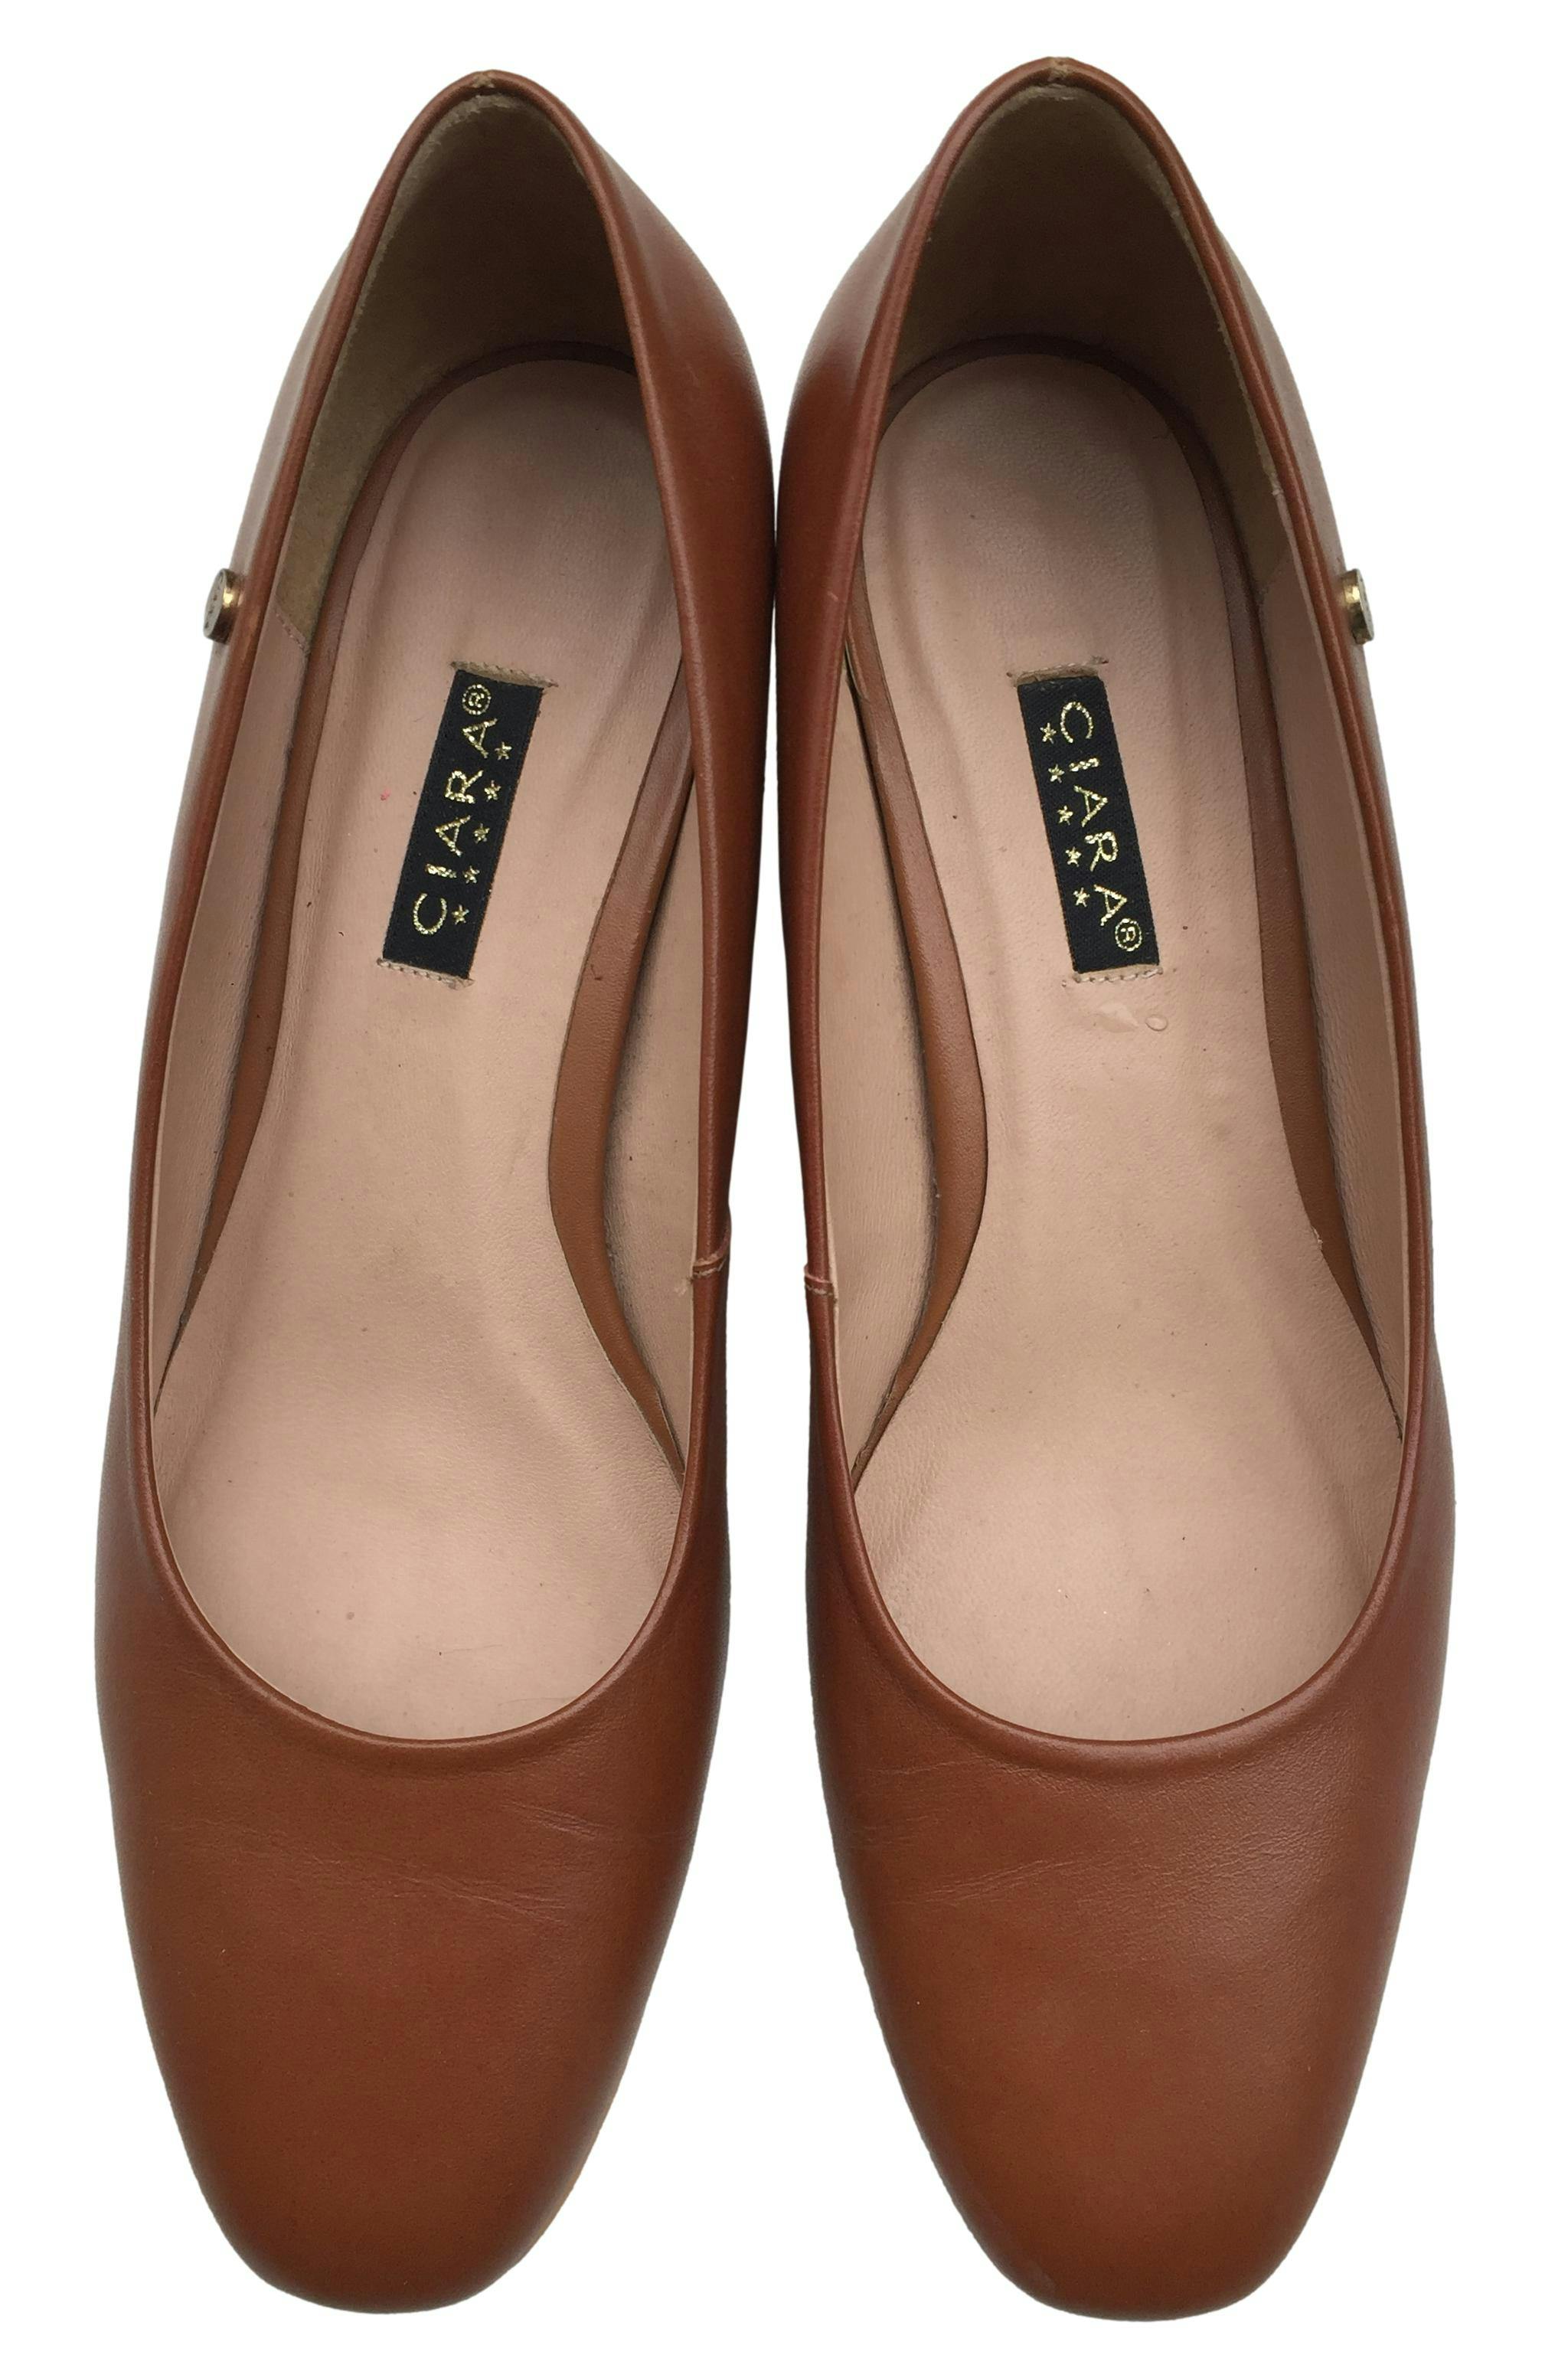 Zapatos Ciara de cuero cobrizo, taco 4 cm. Estado 9/10 por signos en la suela, lo demás en perfecto estado.. Precio original S/320.